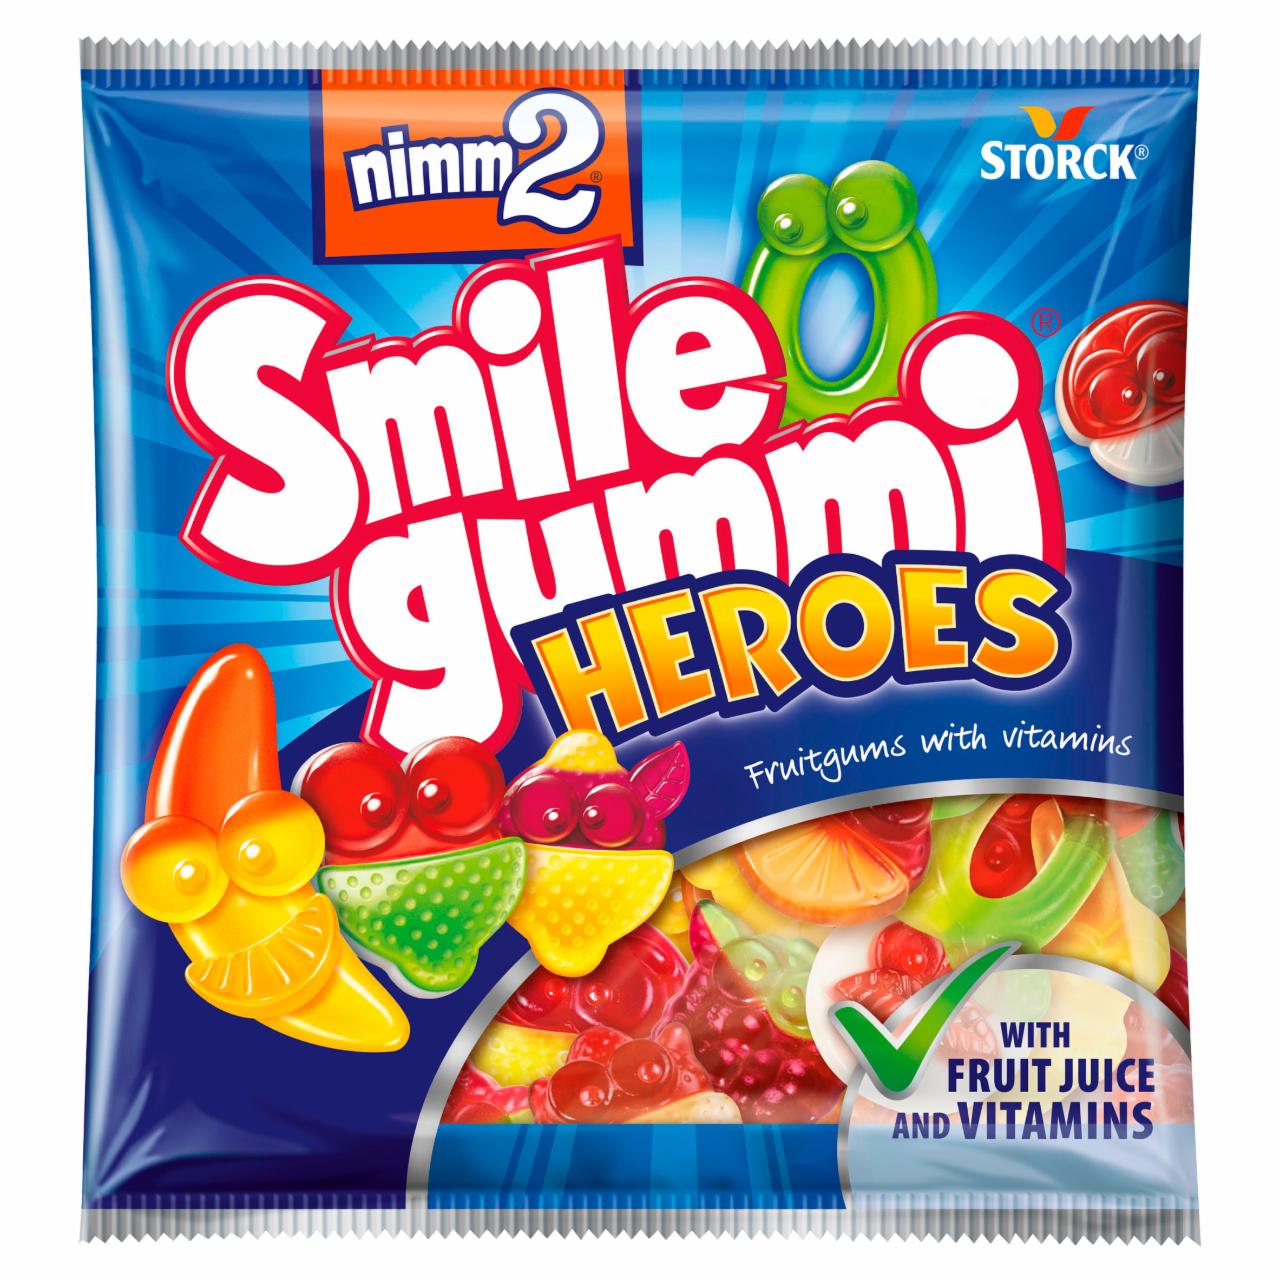 Képek - nimm2 Smilegummi Heroes vegyes gyümölcs ízű gumicukorka vitaminokkal 90 g